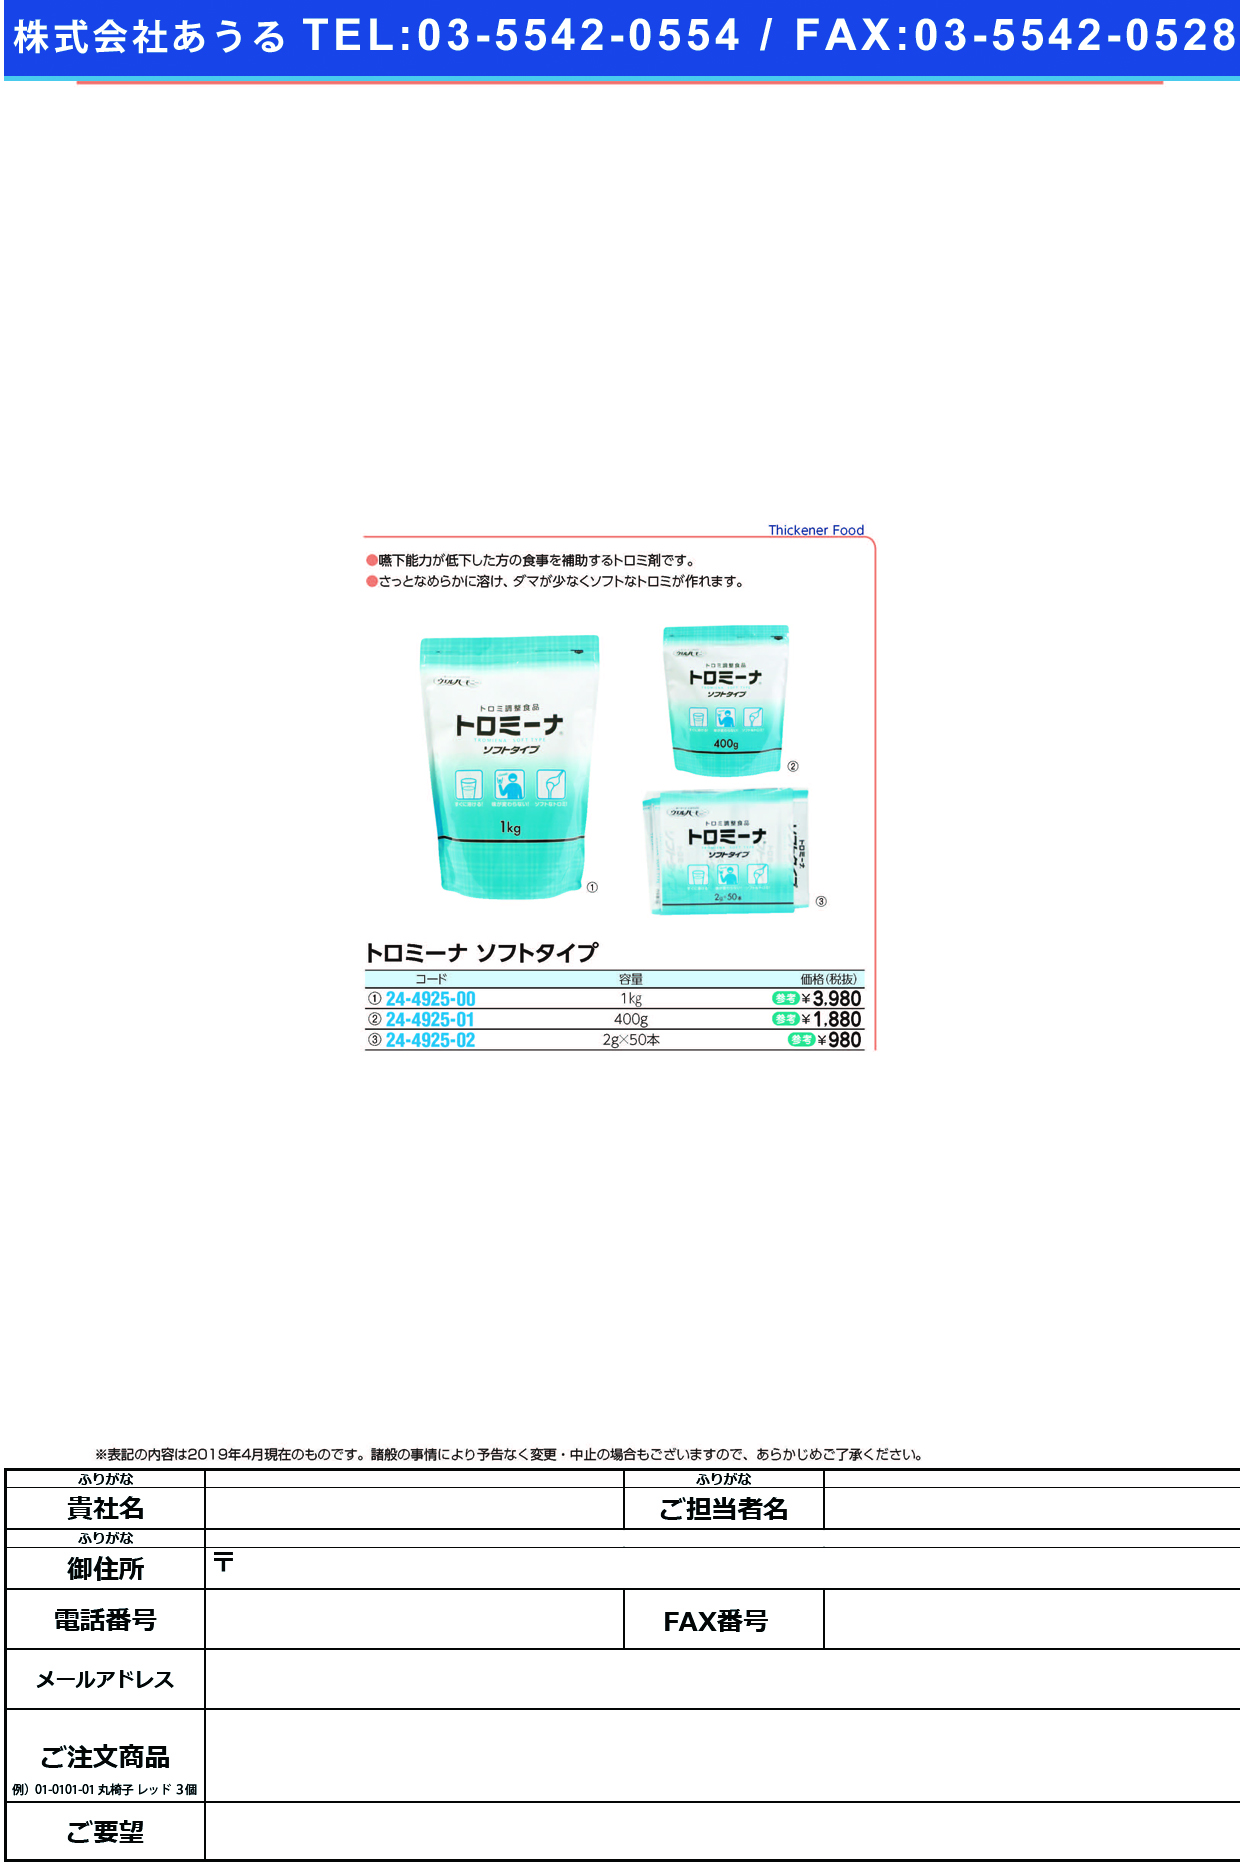 (24-4925-01)トロミーナソフトタイプ 400G ﾄﾛﾐｰﾅｿﾌﾄﾀｲﾌﾟ【1袋単位】【2019年カタログ商品】